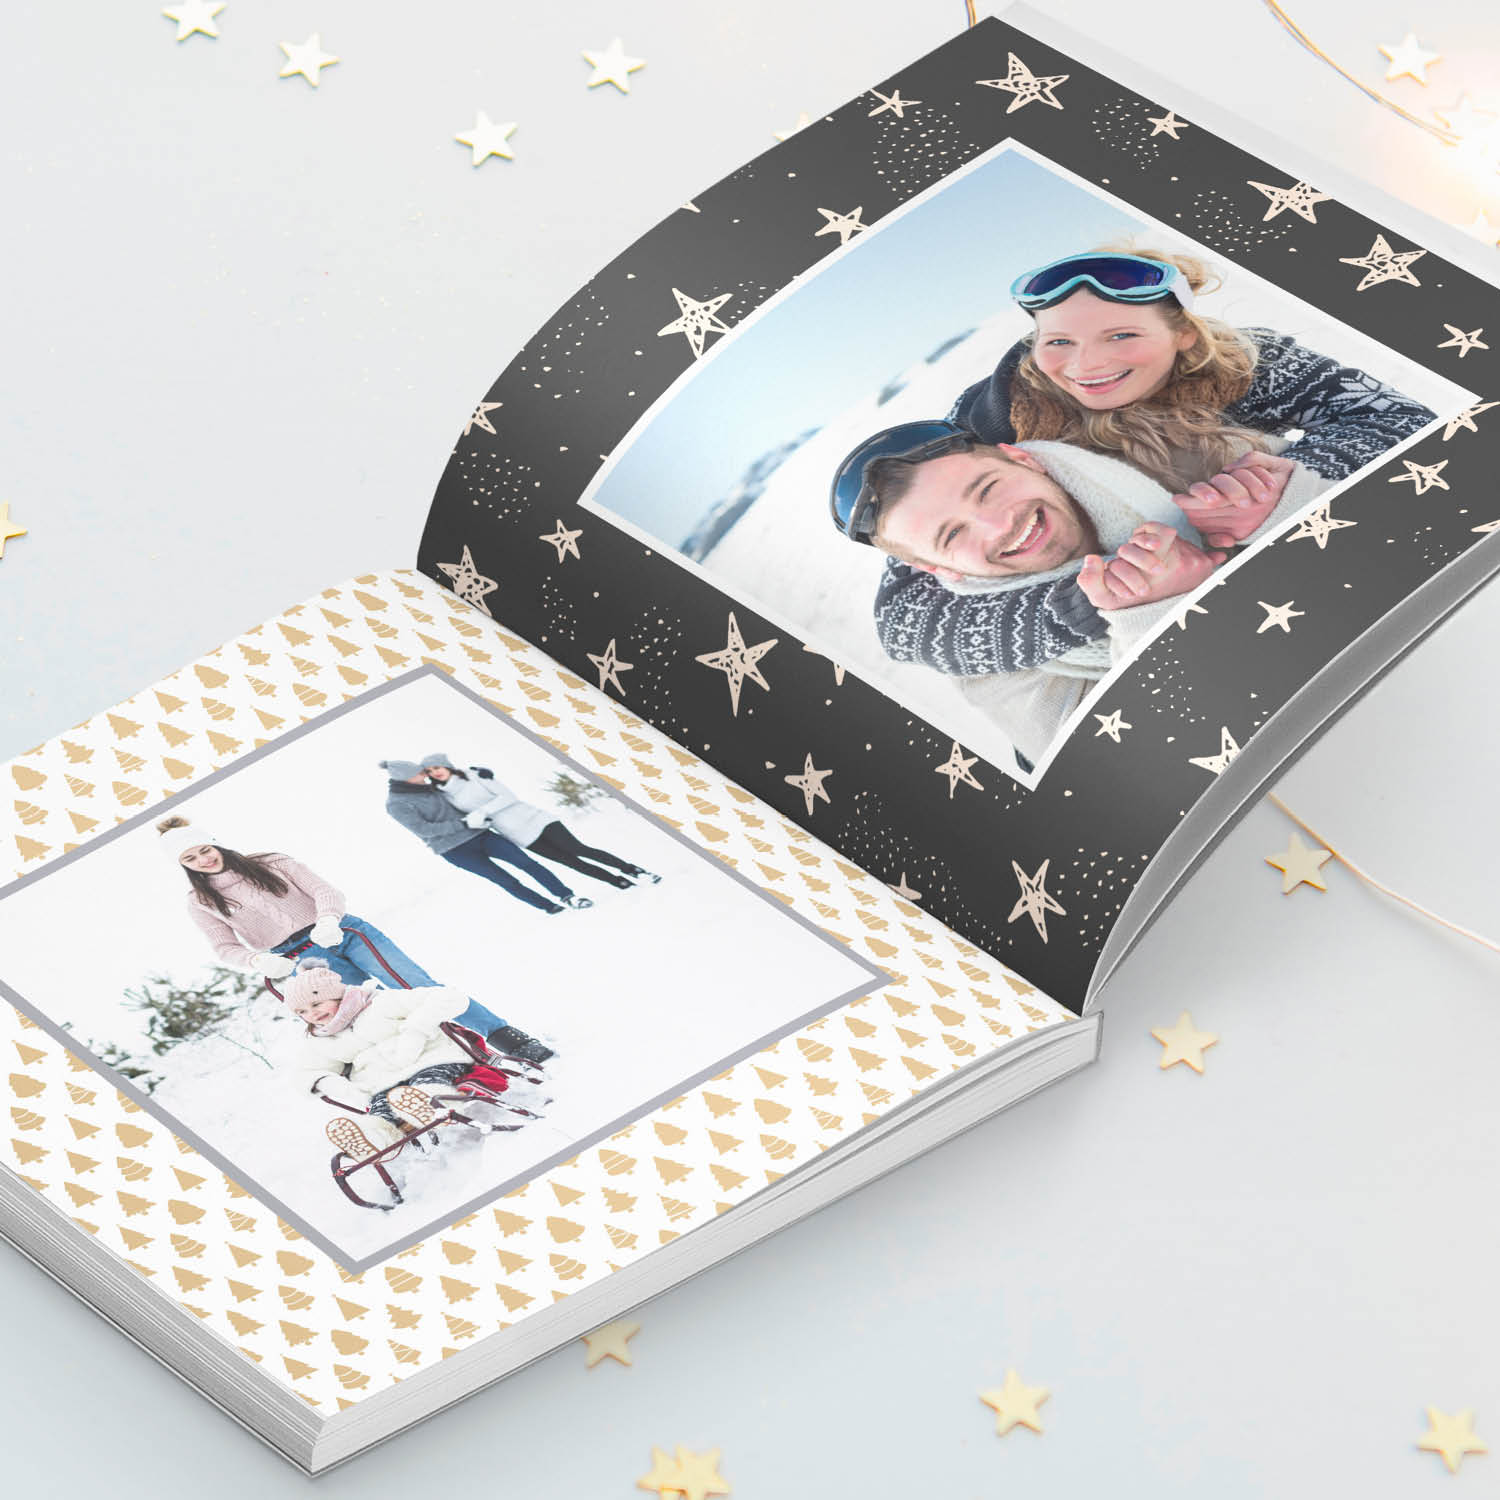 Un moderno foto libro personalizzato o qualcosa di più classico da regalare  ad una persona cara per Natale? - Idee Regalo Blog